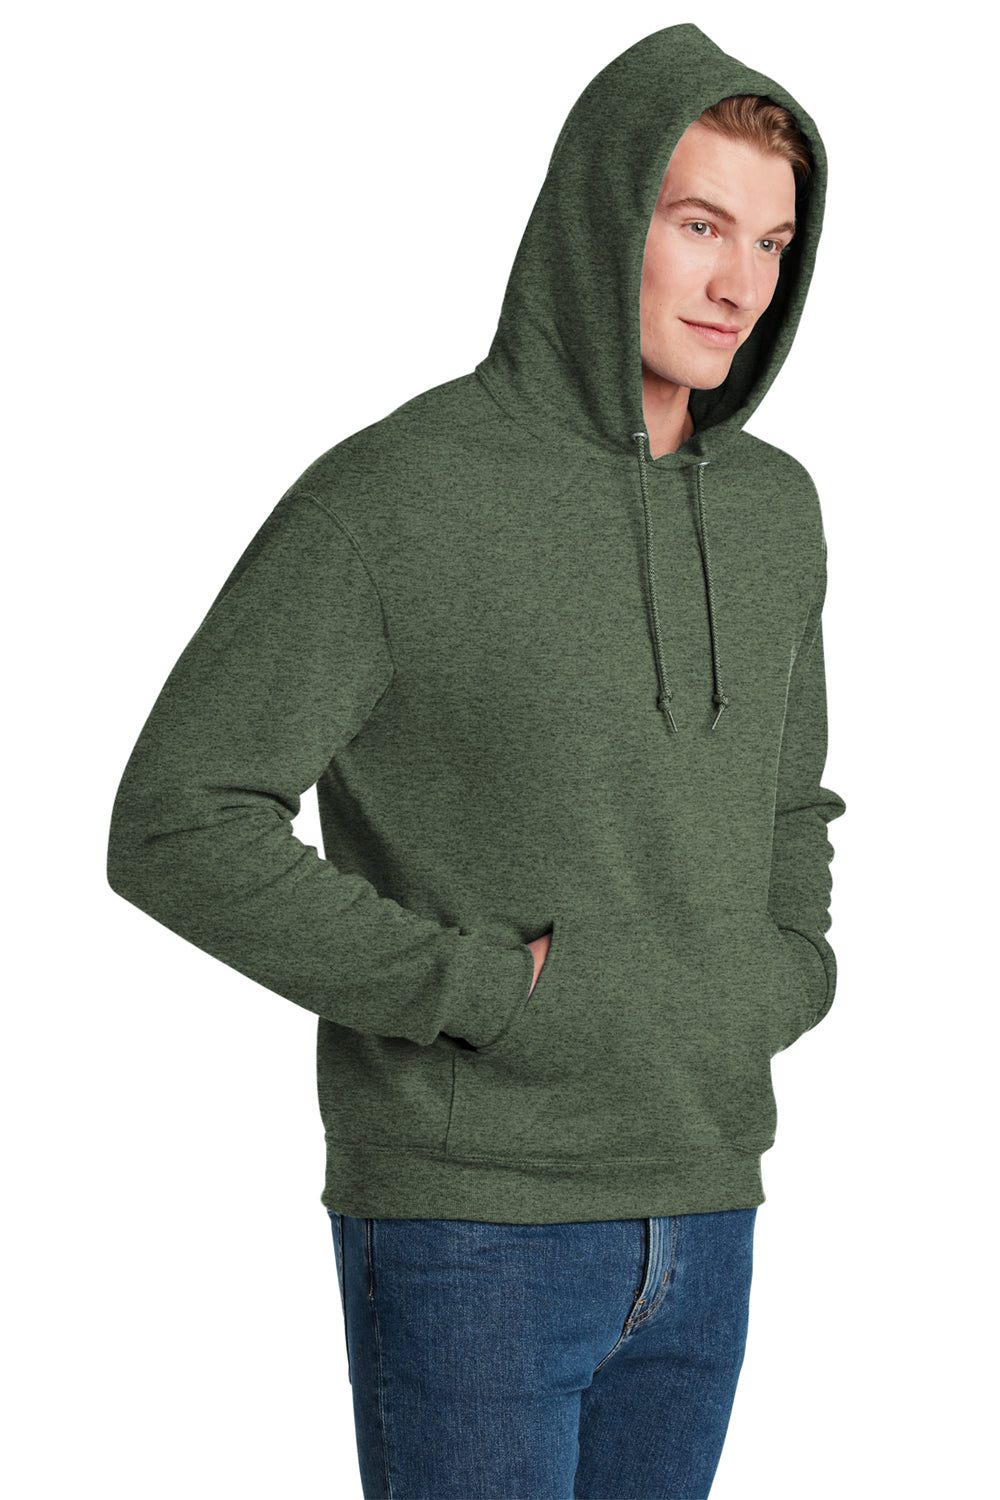 Jerzees Mens NuBlend Fleece Hooded Sweatshirt Hoodie Heather Military Green 3Q